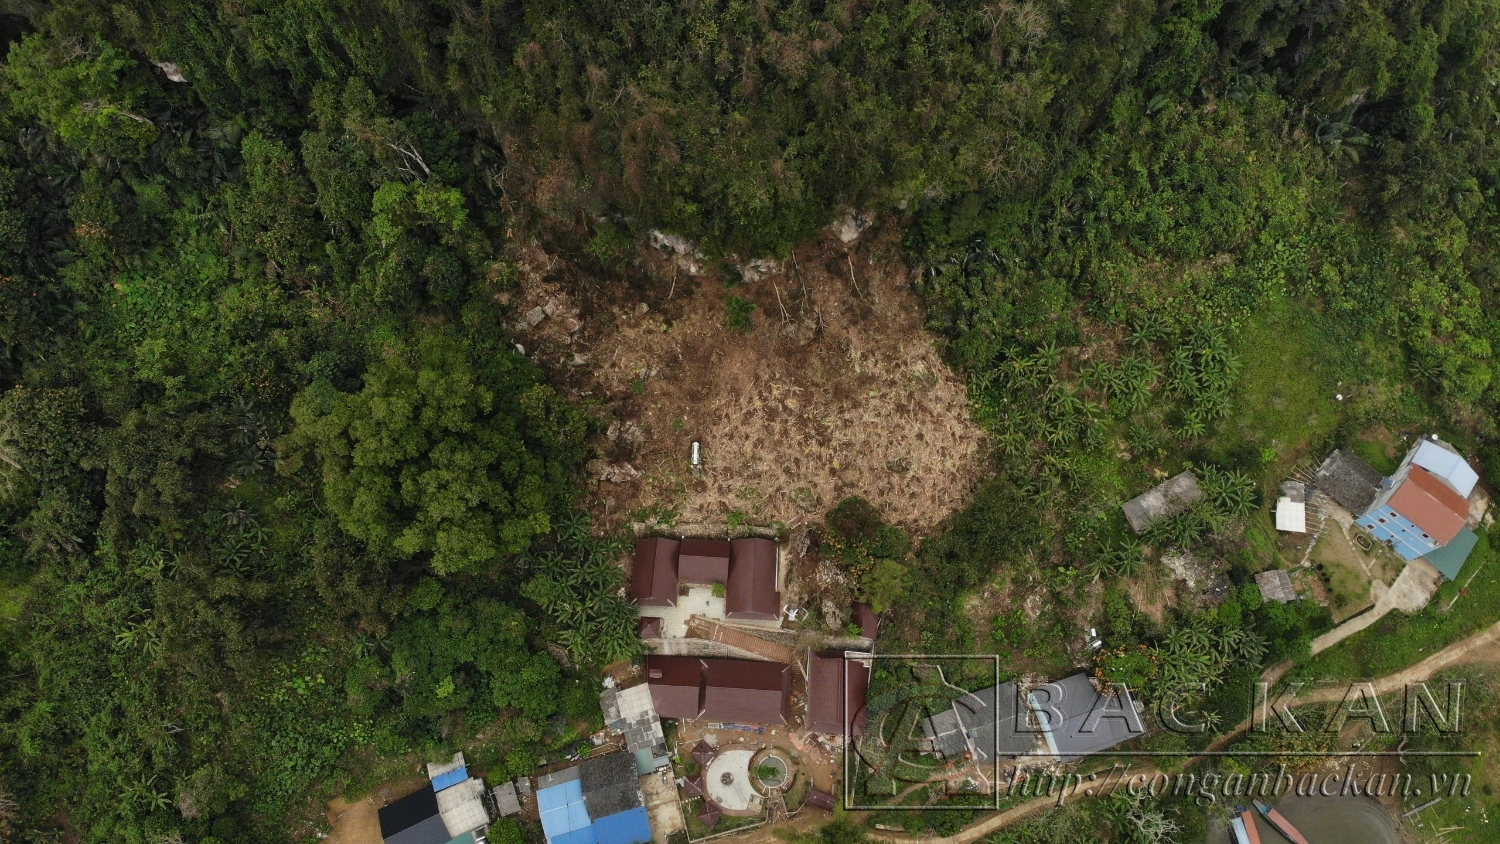  Hiện trường vụ hủy hoại rừng xảy ra tại xã Nam Mẫu, huyện Ba Bể, tỉnh Bắc Kạn